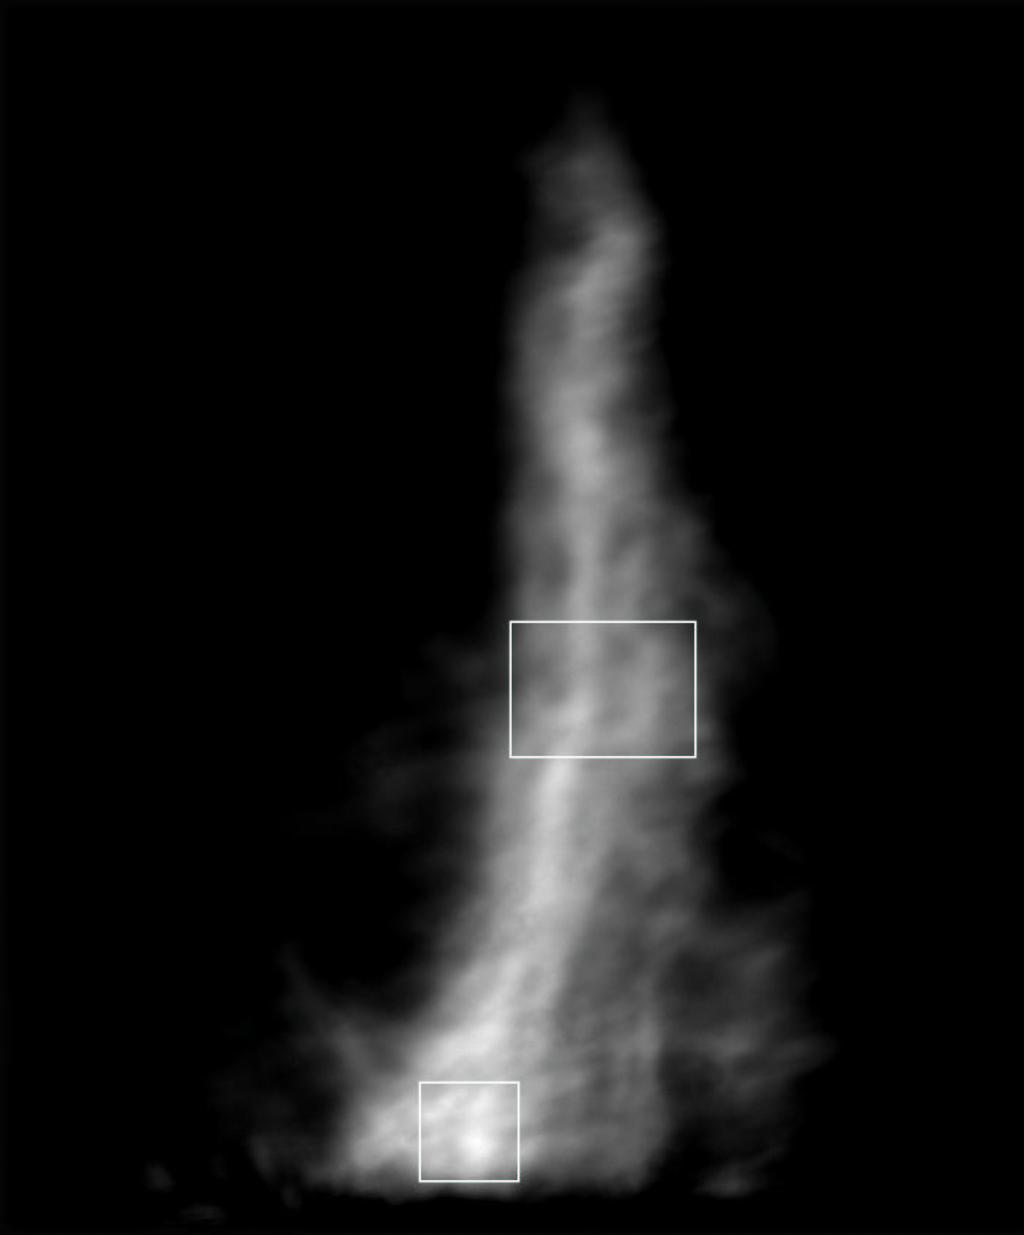 Stellmacher, Wiehr, Hirzberger: He D3 /Hβ imaging of prominences 10